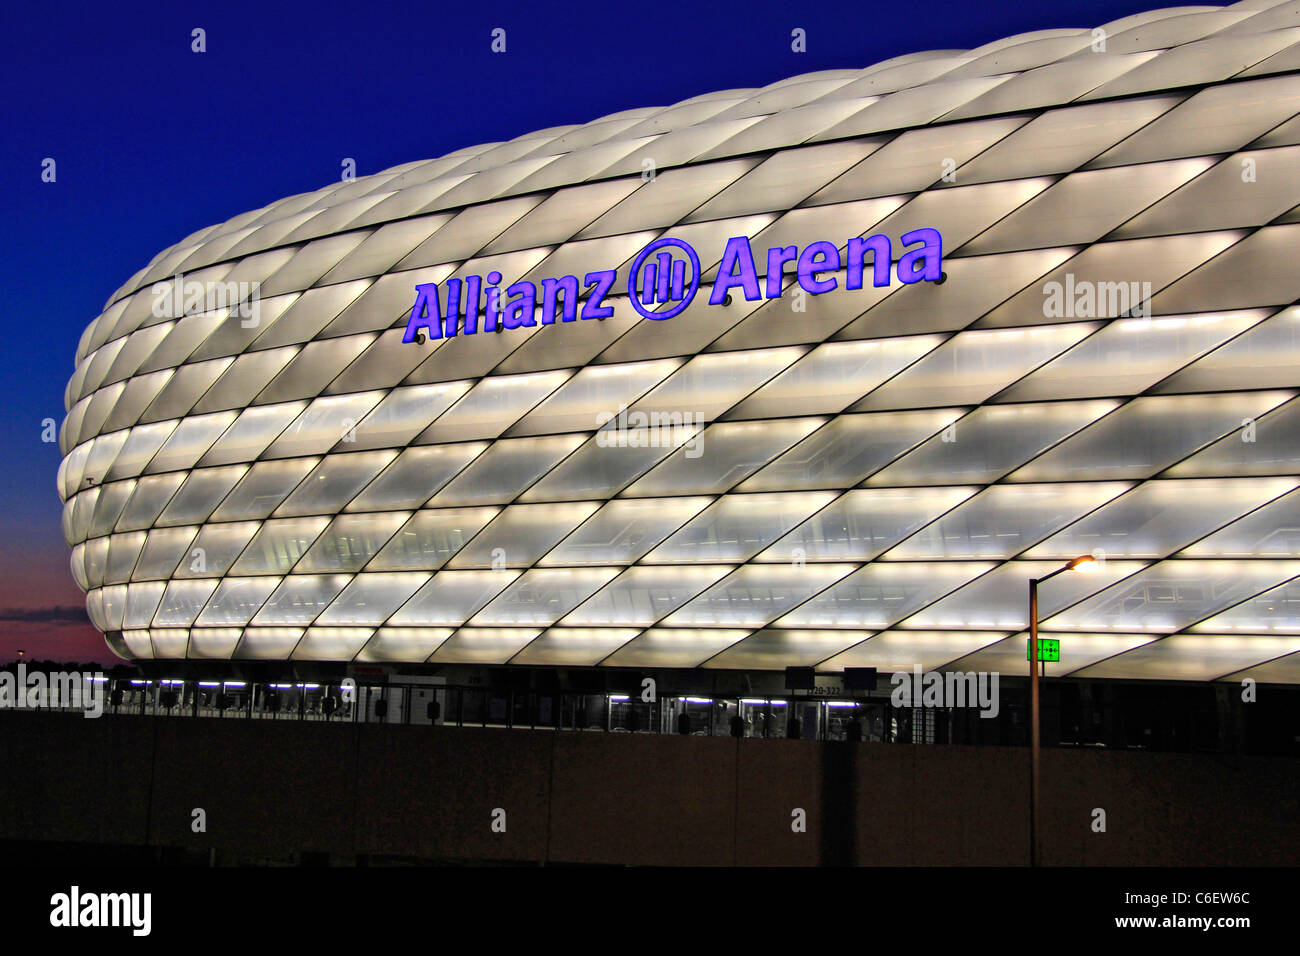 L'Allemagne, le stade de football Allianz Arena de Munich Banque D'Images